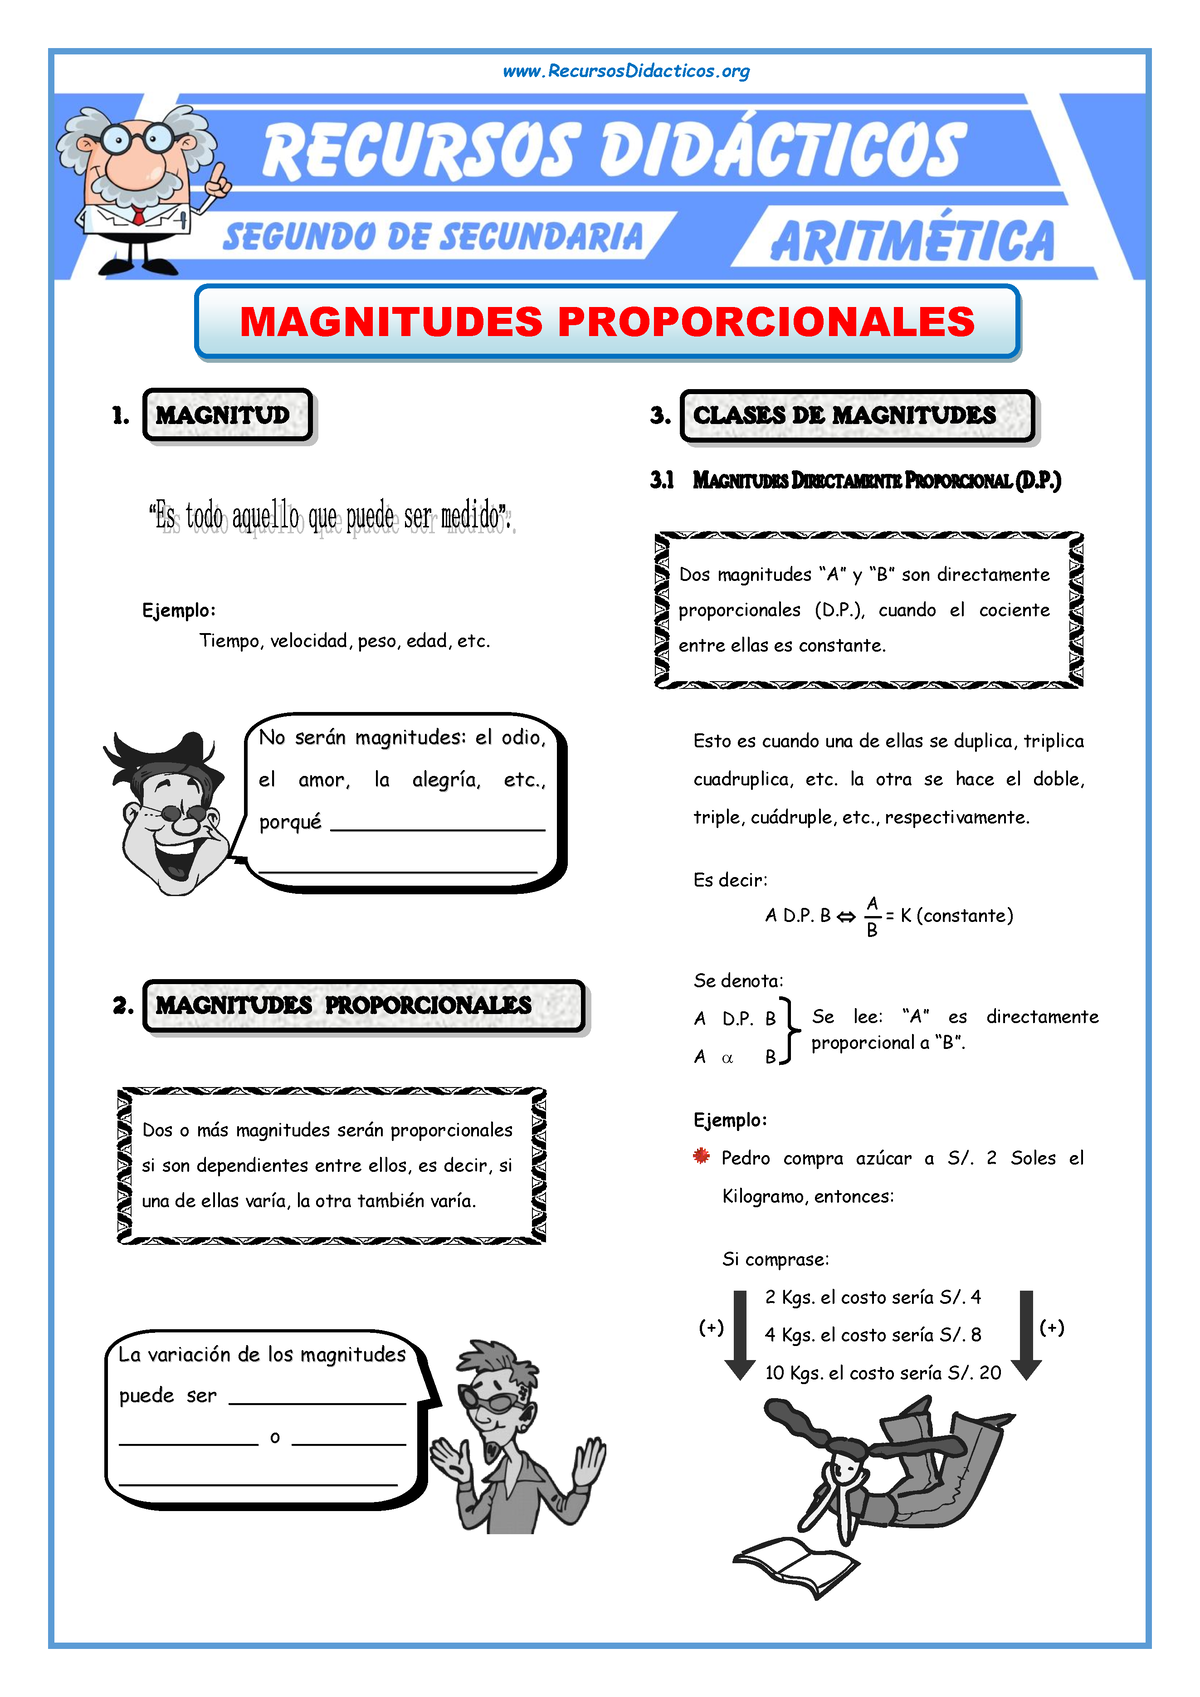 Ejercicios De Magnitudes Proporcionales Para Segundo De Secundaria Magnitudes Proporcionales 1 3127